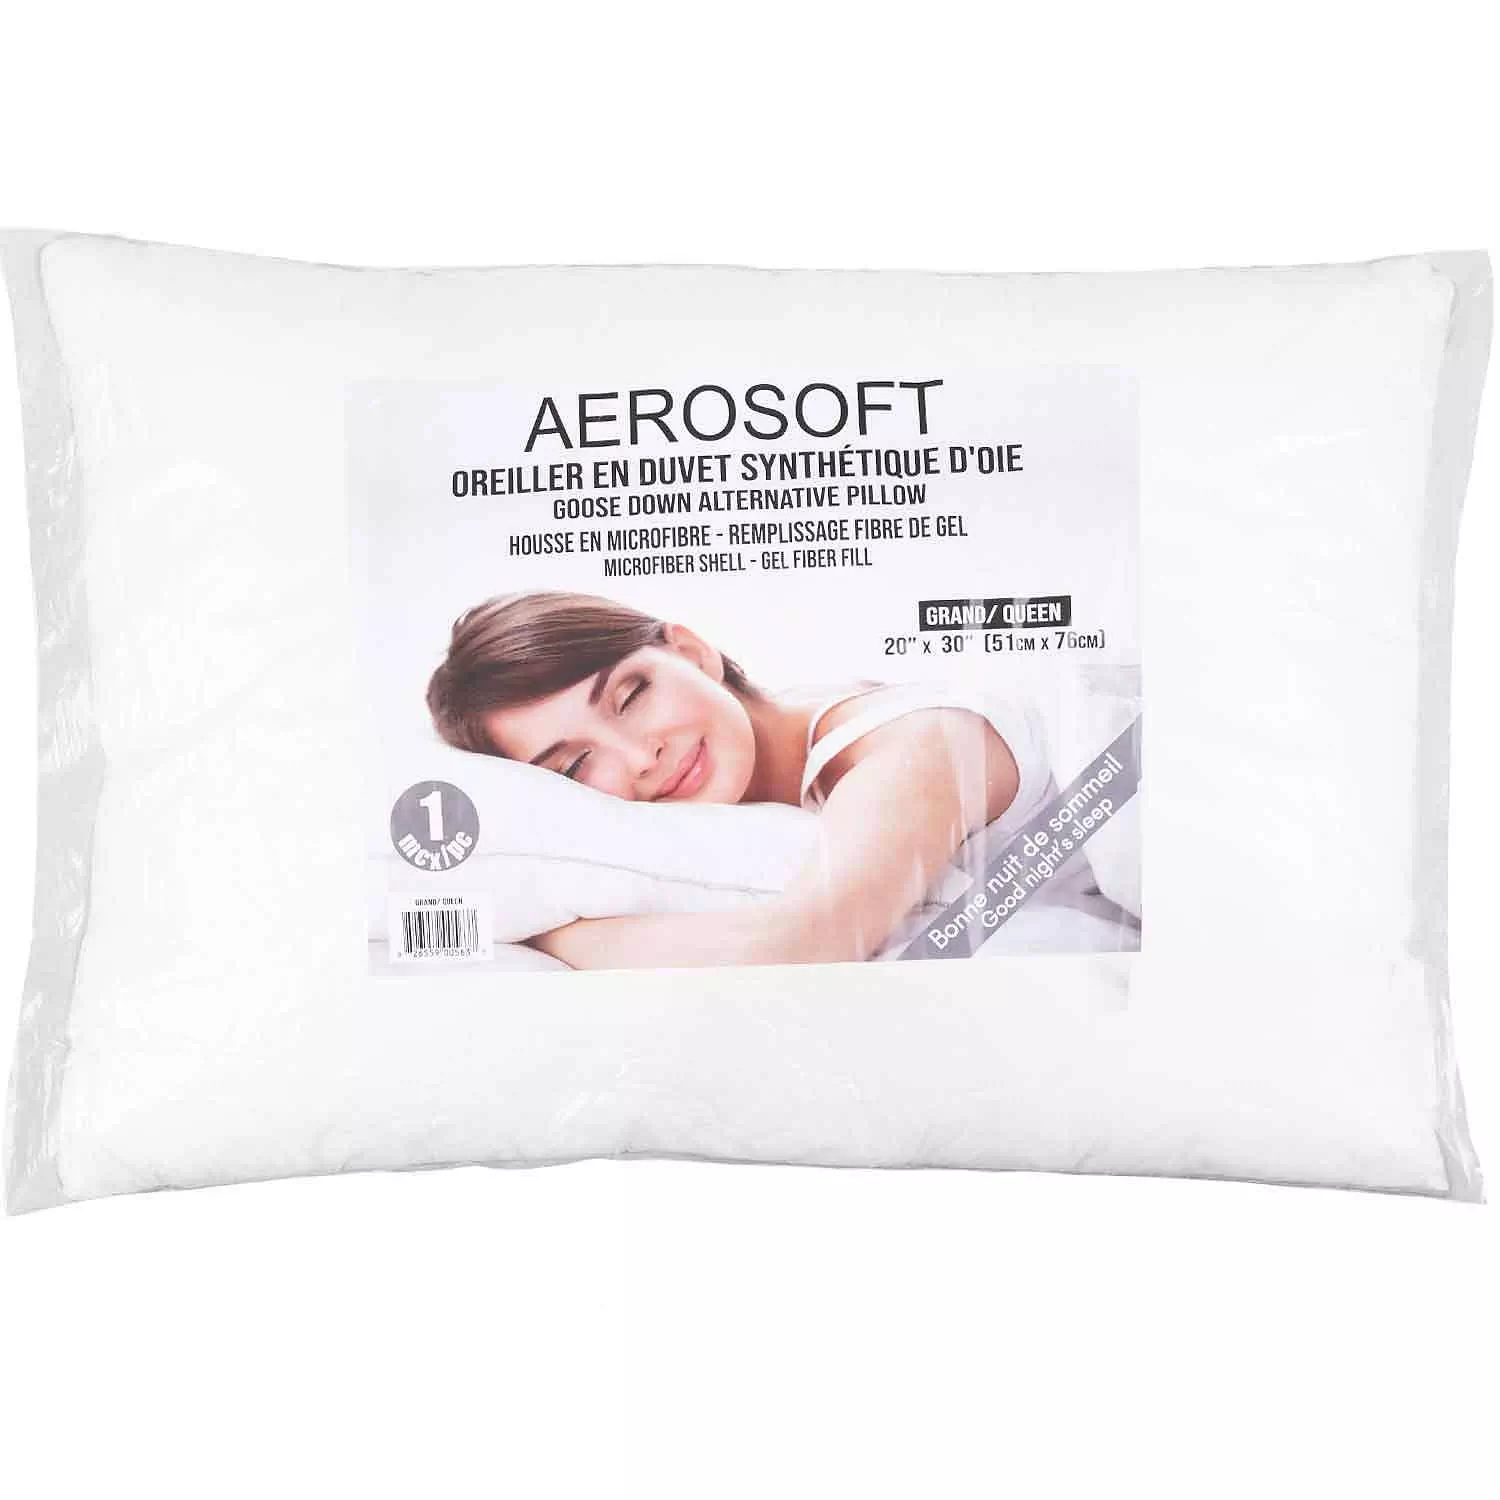 Aerosoft - Goose down alternative pillow, 20"x30", queen